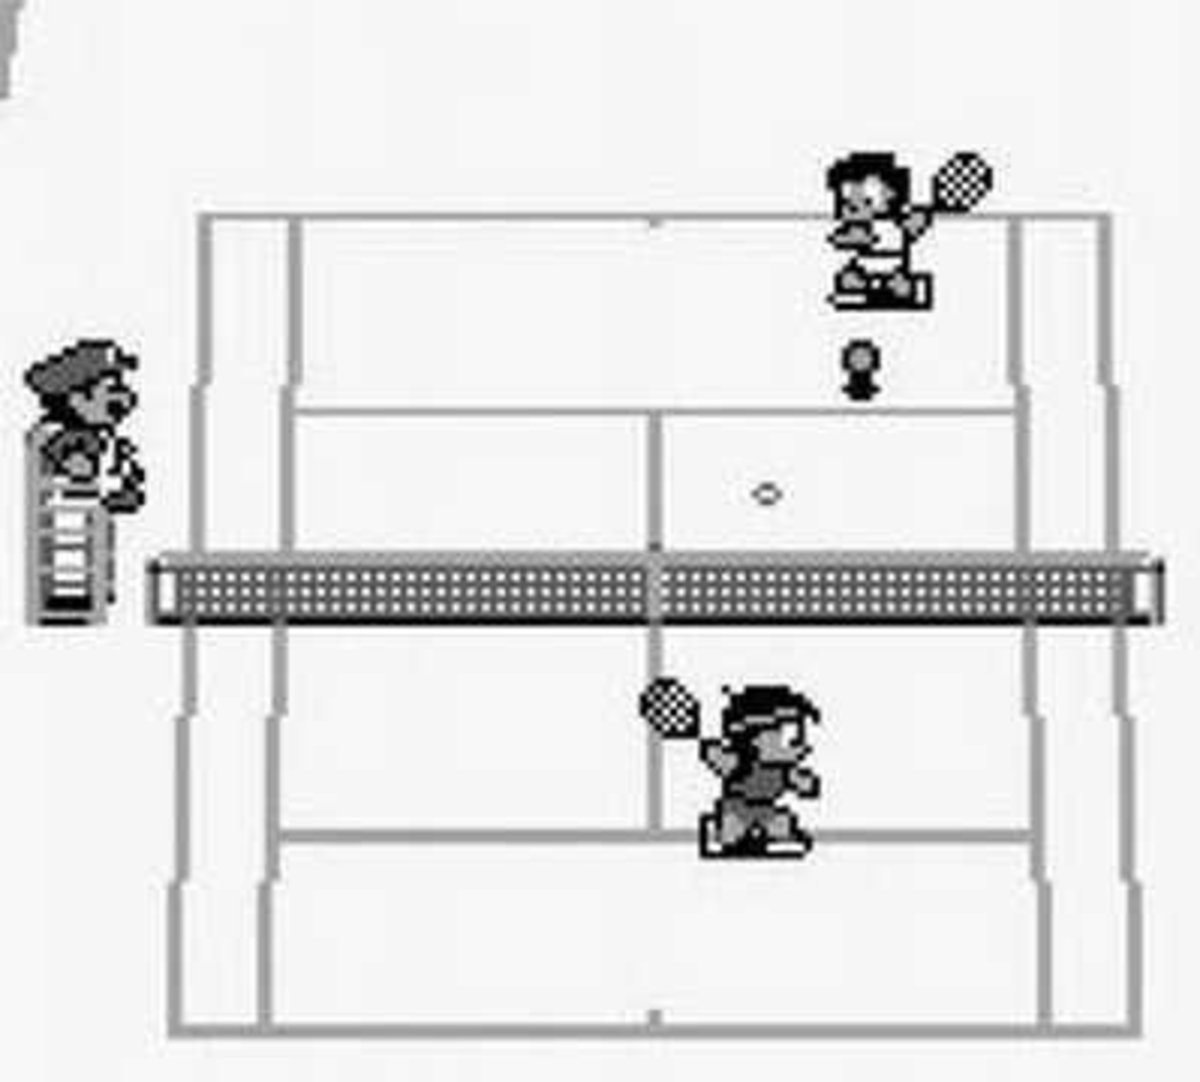 Game Boy Classic Edition: 25 juegos que debería tener la consola